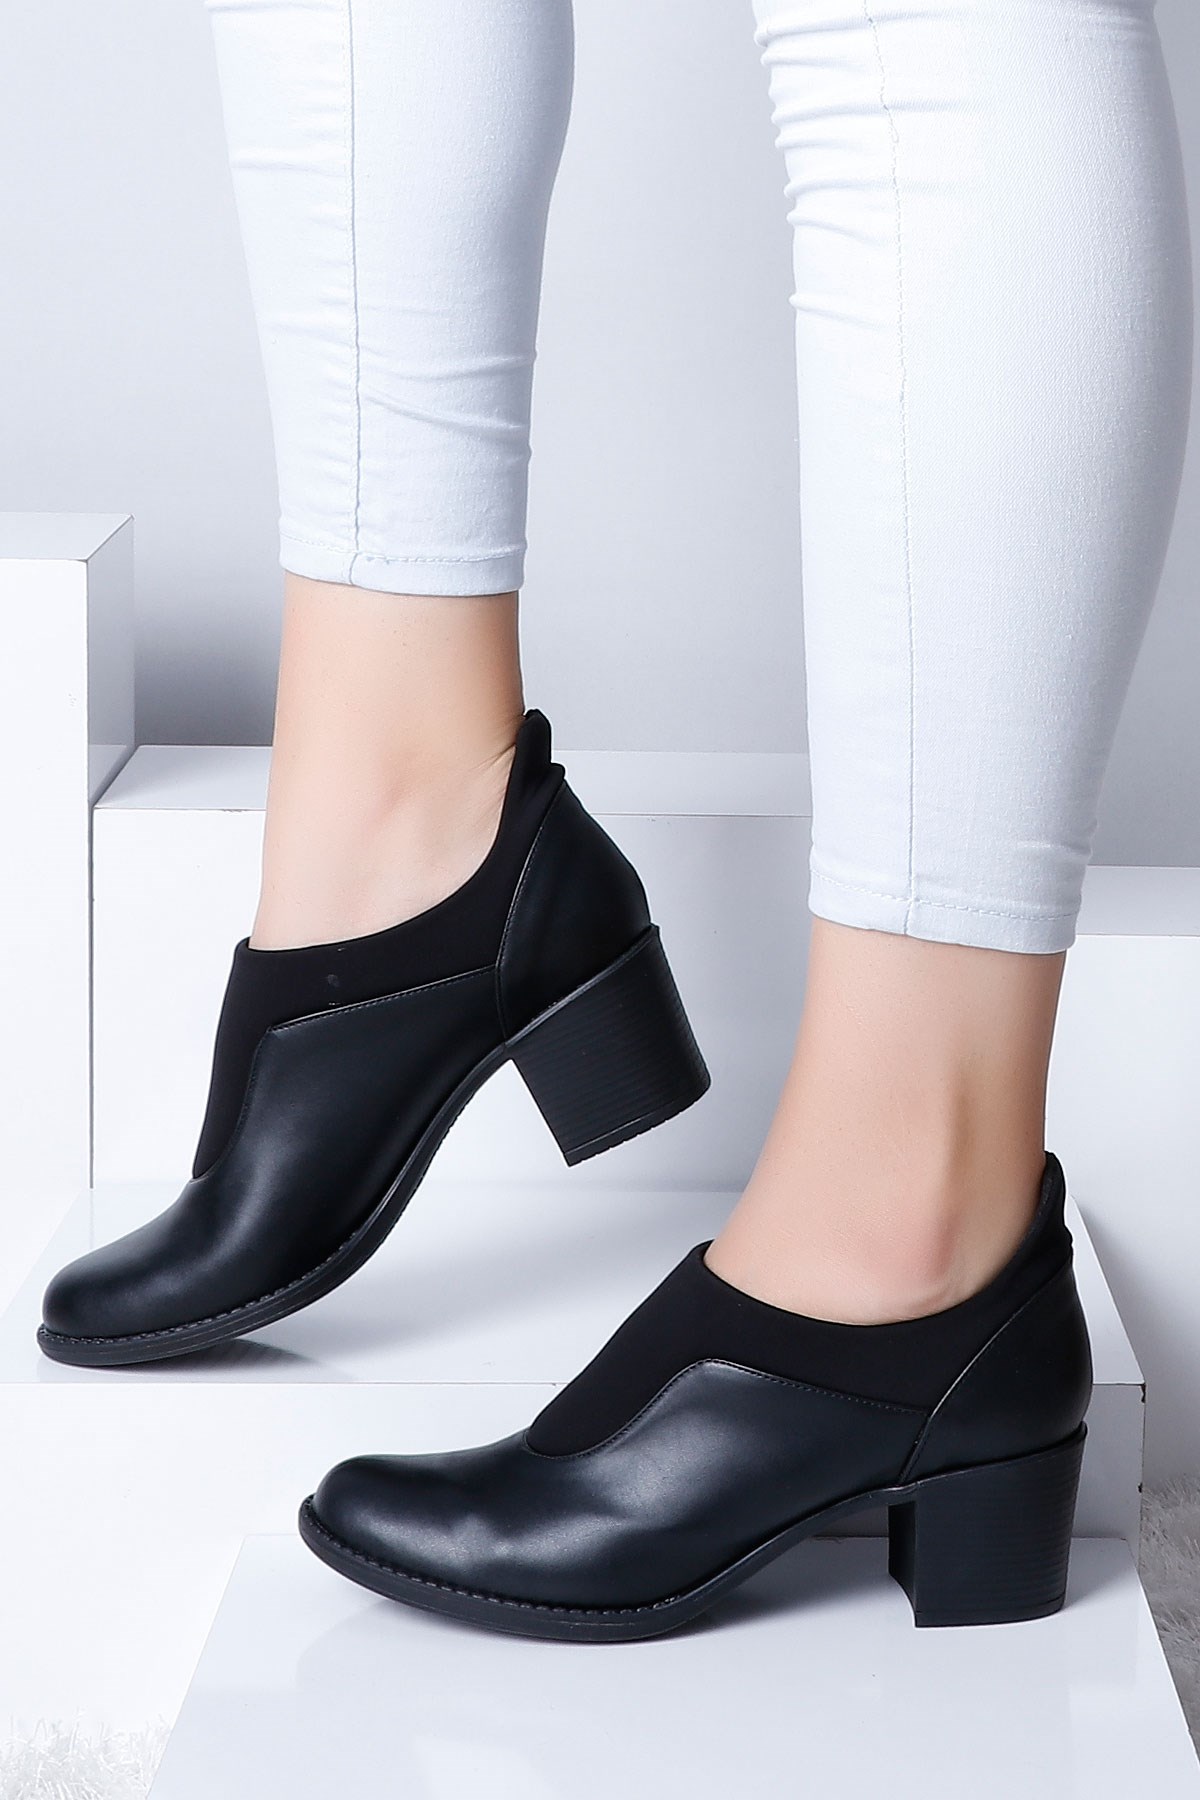 Siyah Topuklu Kadın Ayakkabı 2021 Fiyatı ve Modelleri